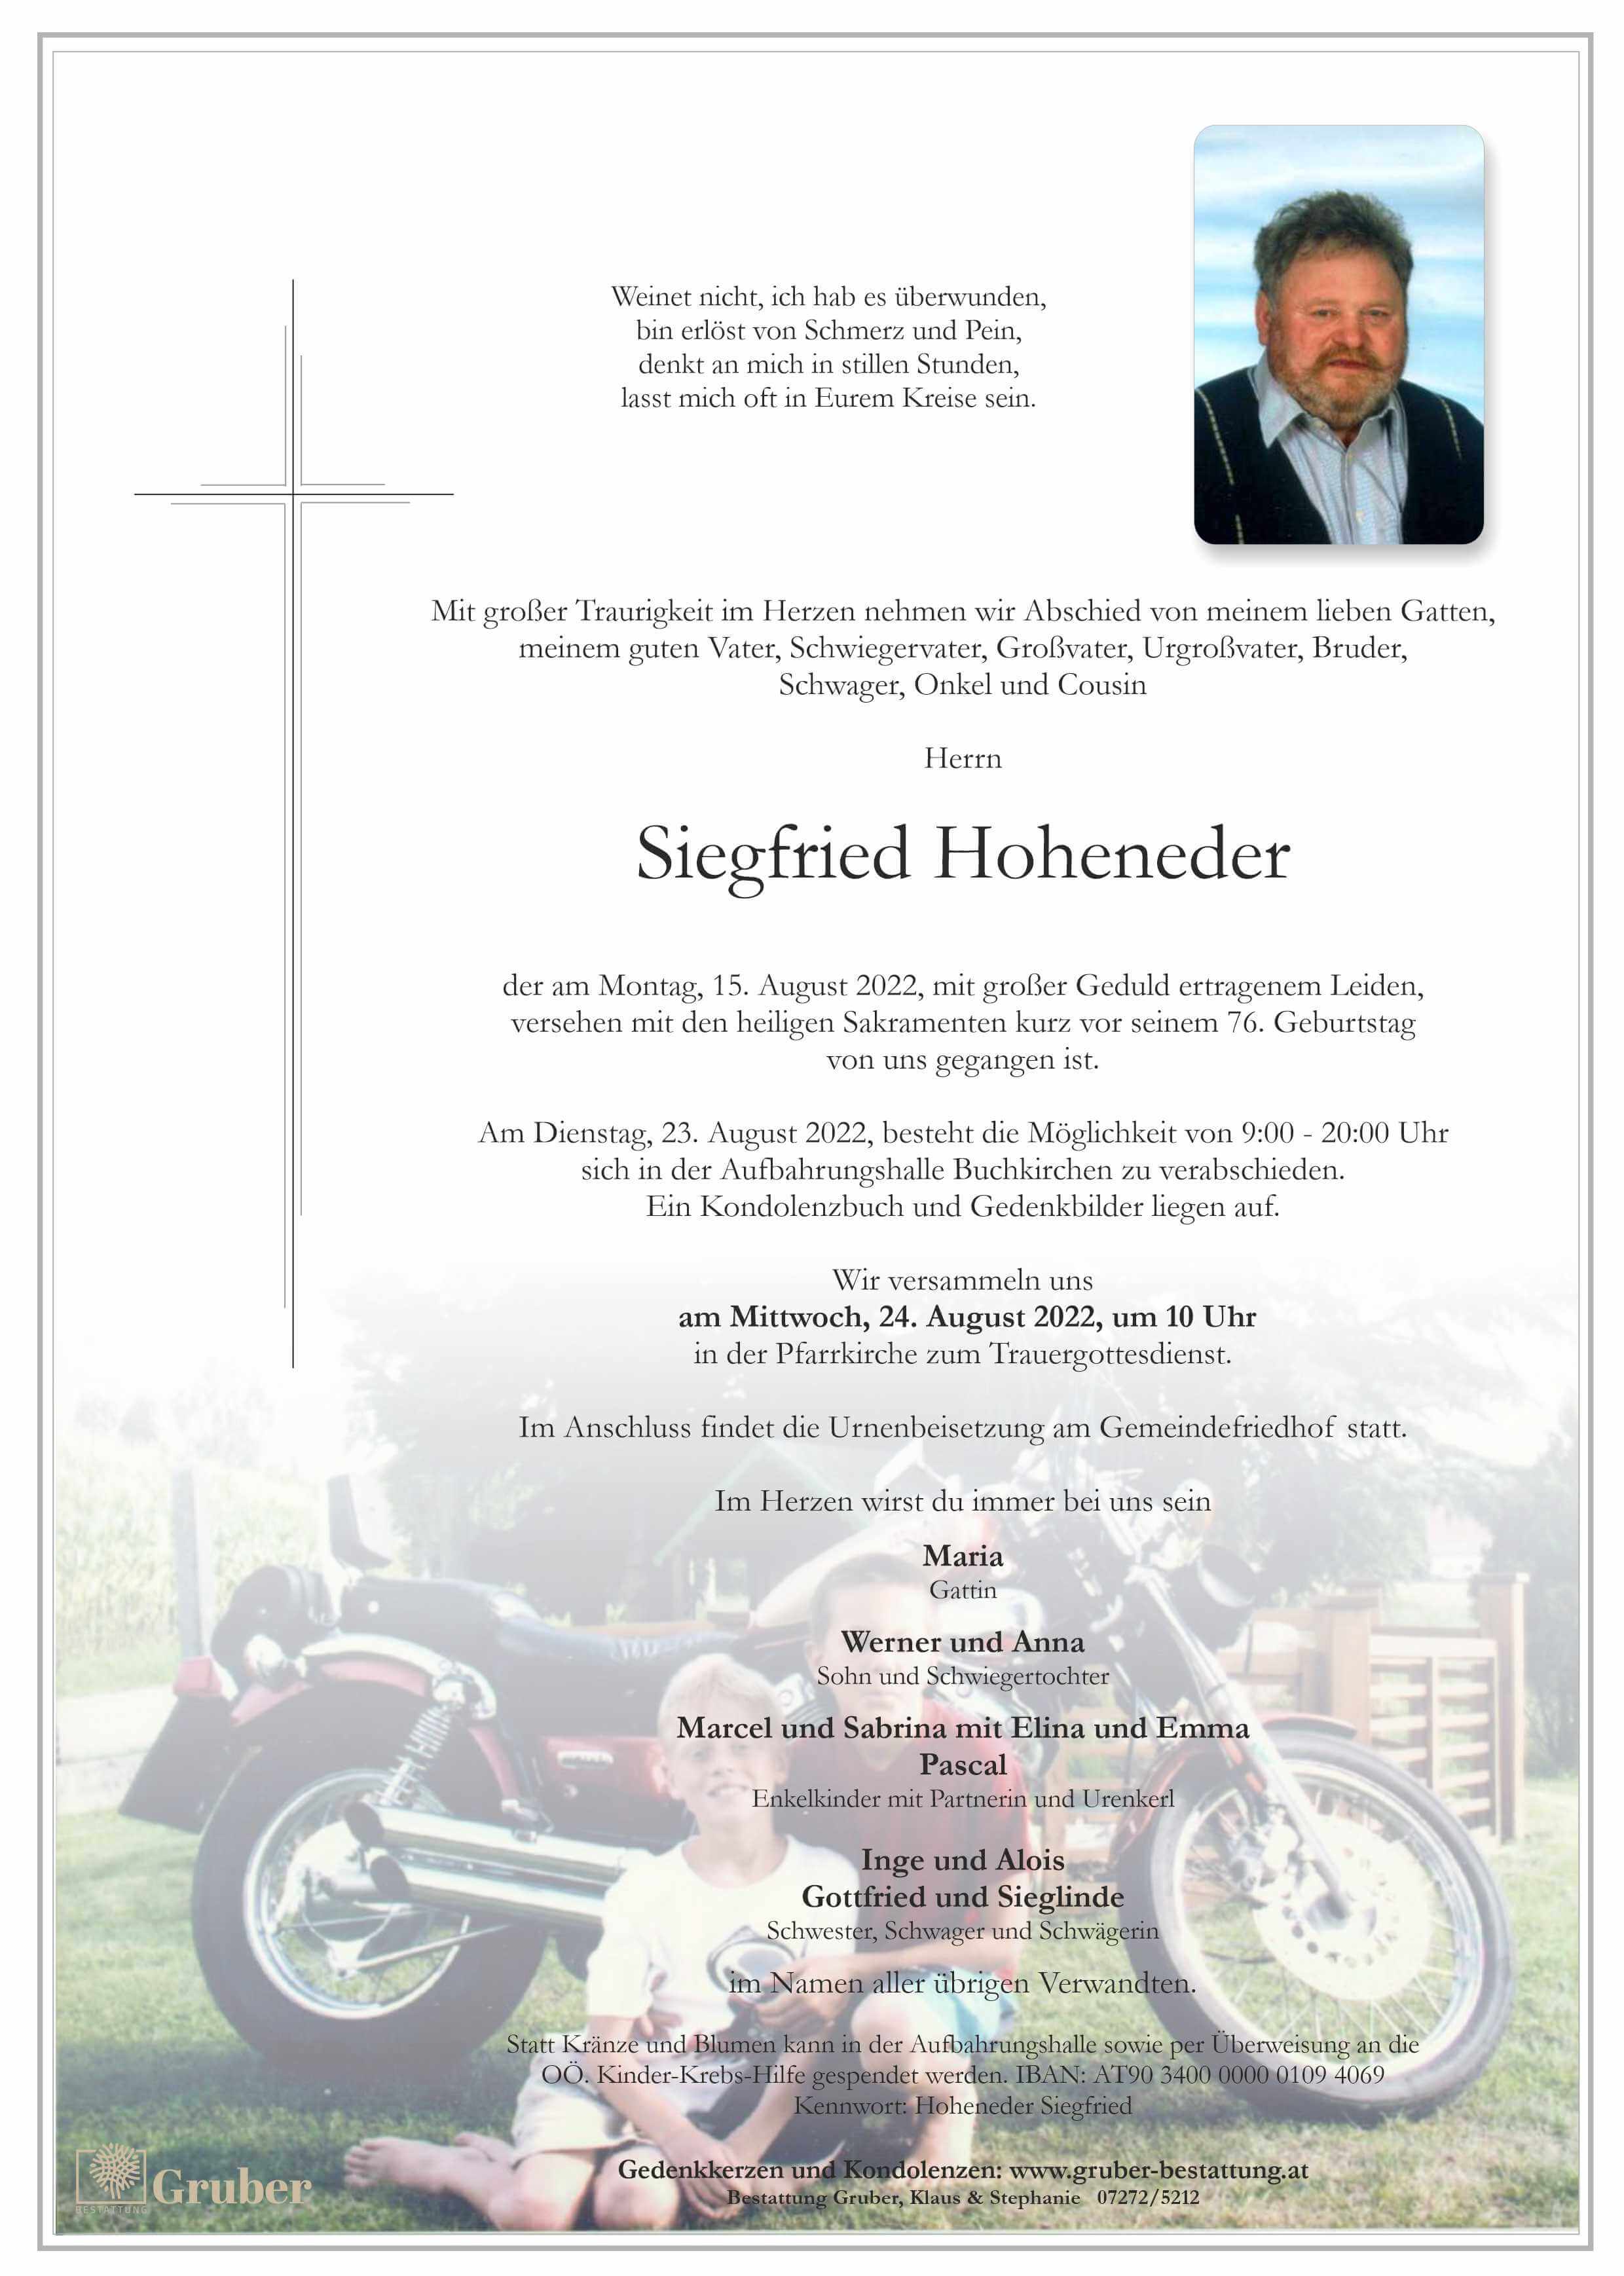 Siegfried Hoheneder (Buchkirchen)